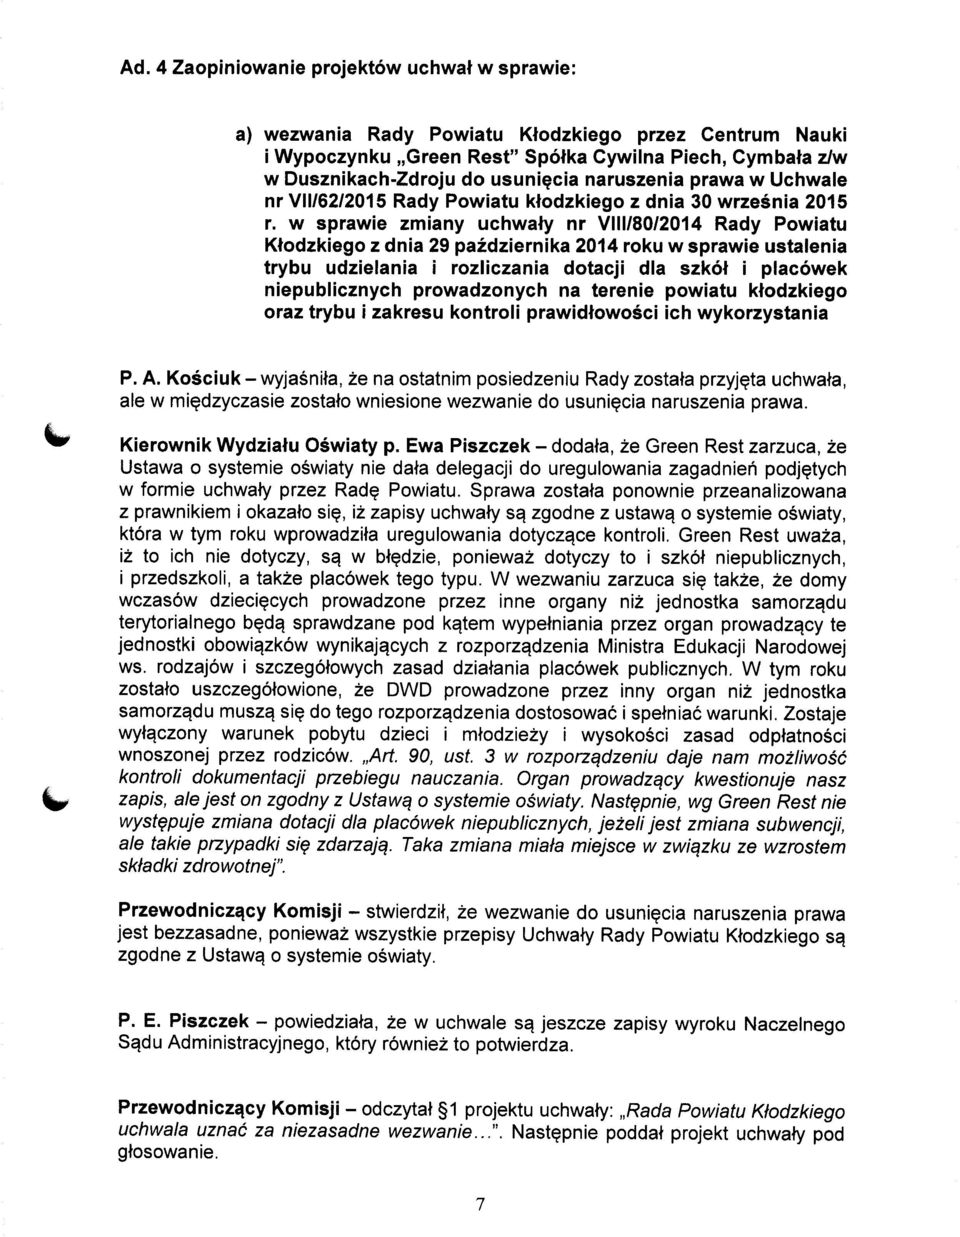 w sprawie zmiany uchwaty nr VMI/80/2014 Rady Powiatu Ktodzkiego z dnia 29 pazdziernika 2014 roku w sprawie ustalenia trybu udzielania i rozliczania dotacji dla szkot i placowek niepublicznych